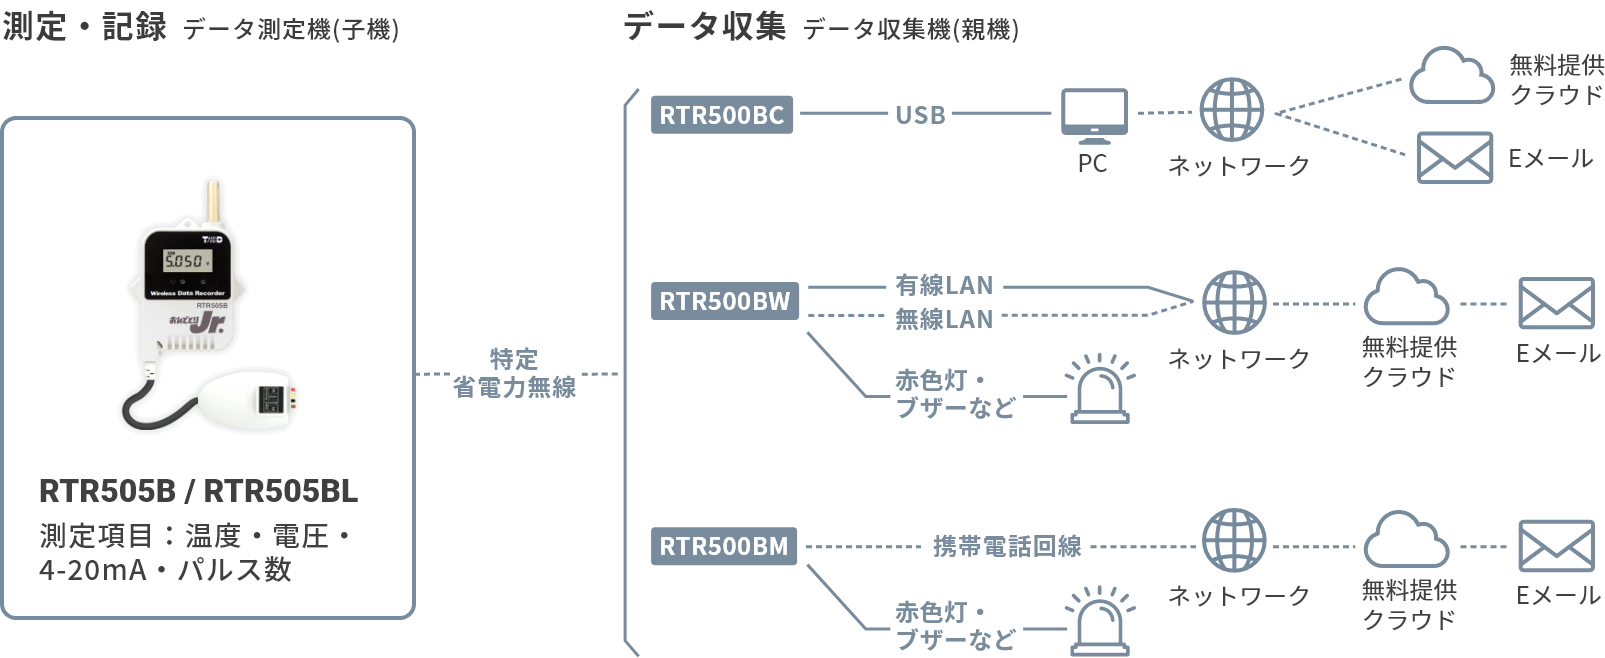 激安☆超特価 ワイヤレスデータロガー 1ch おんどとりRTR500Bシリーズ 子機 RTR-505BL